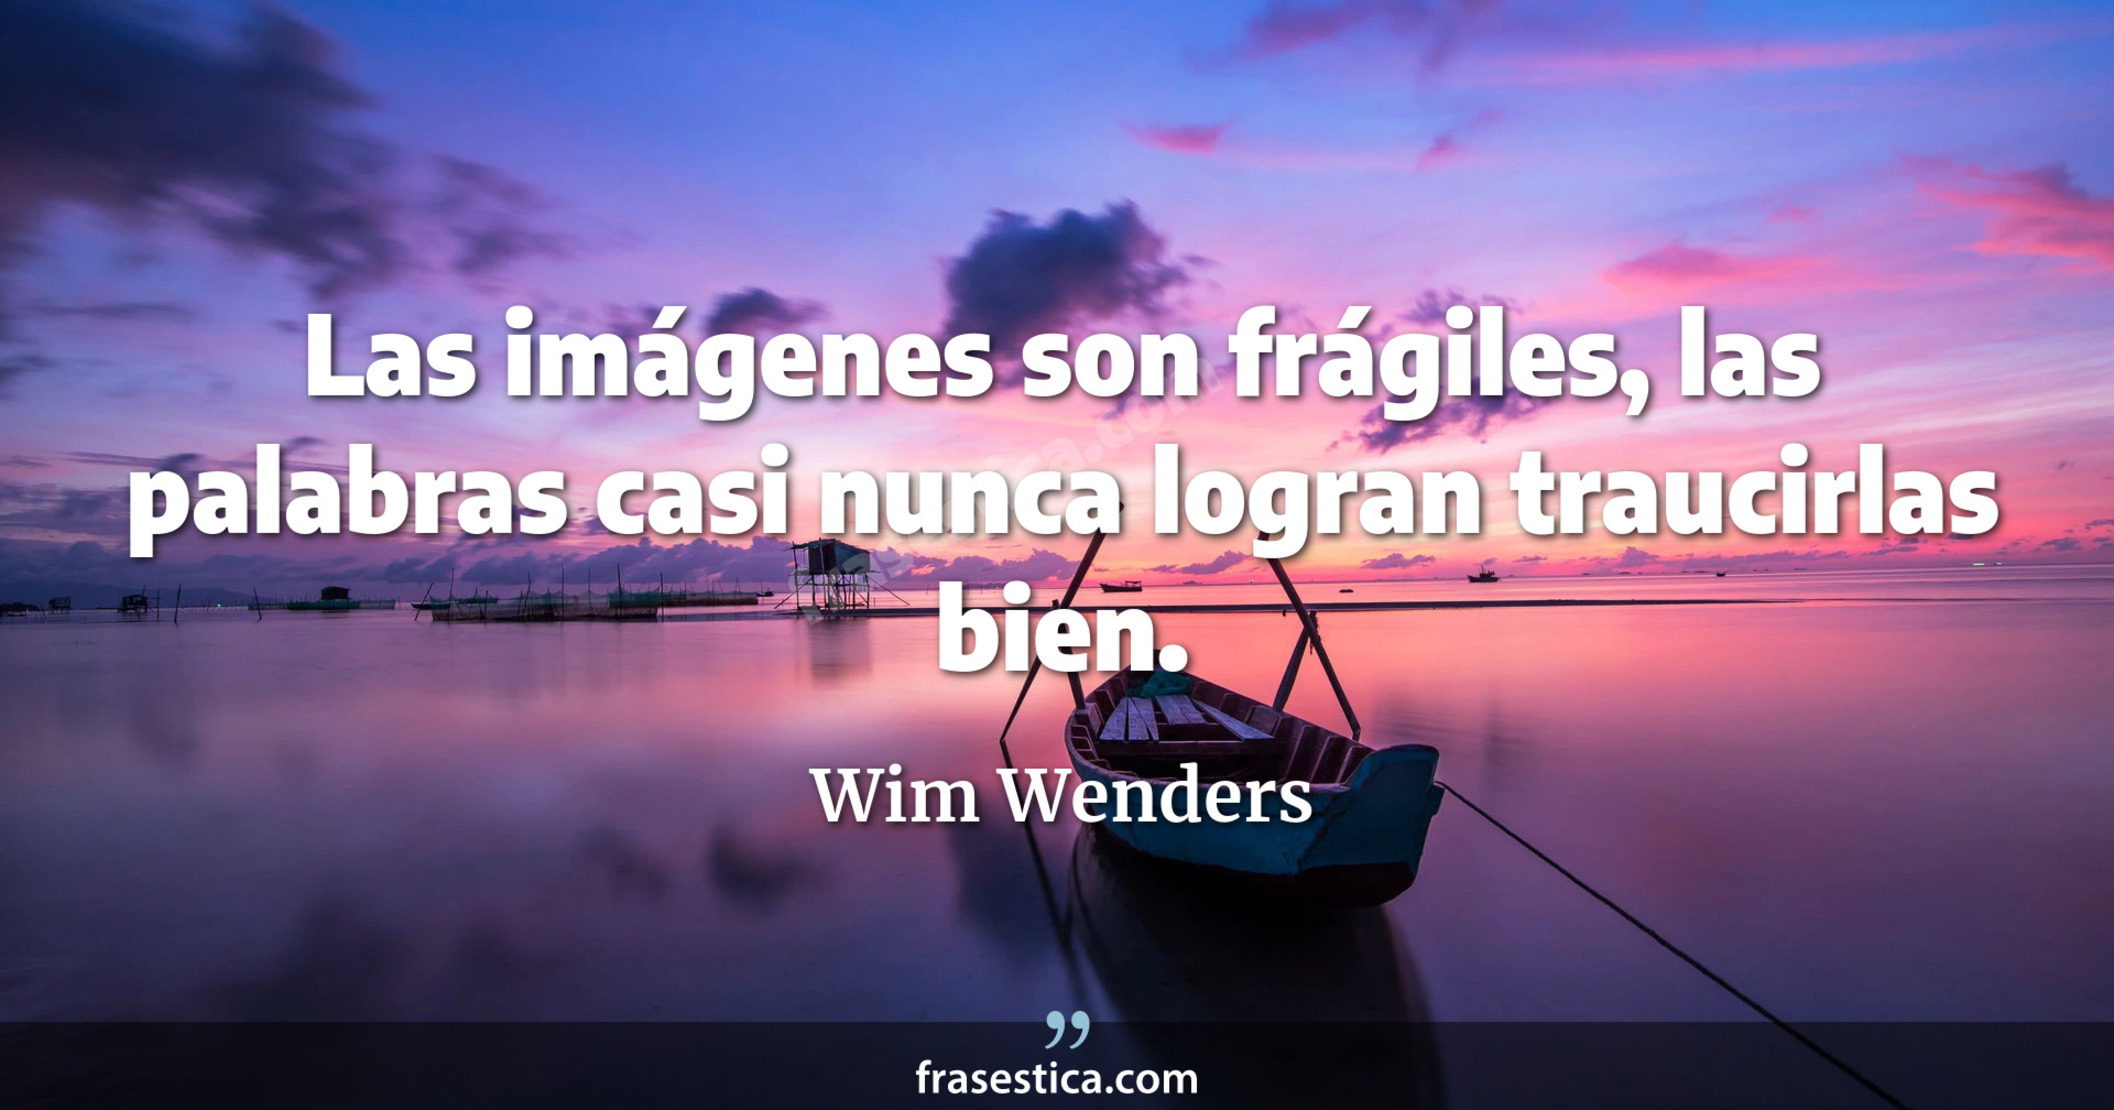 Las imágenes son frágiles, las palabras casi nunca logran traucirlas bien. - Wim Wenders